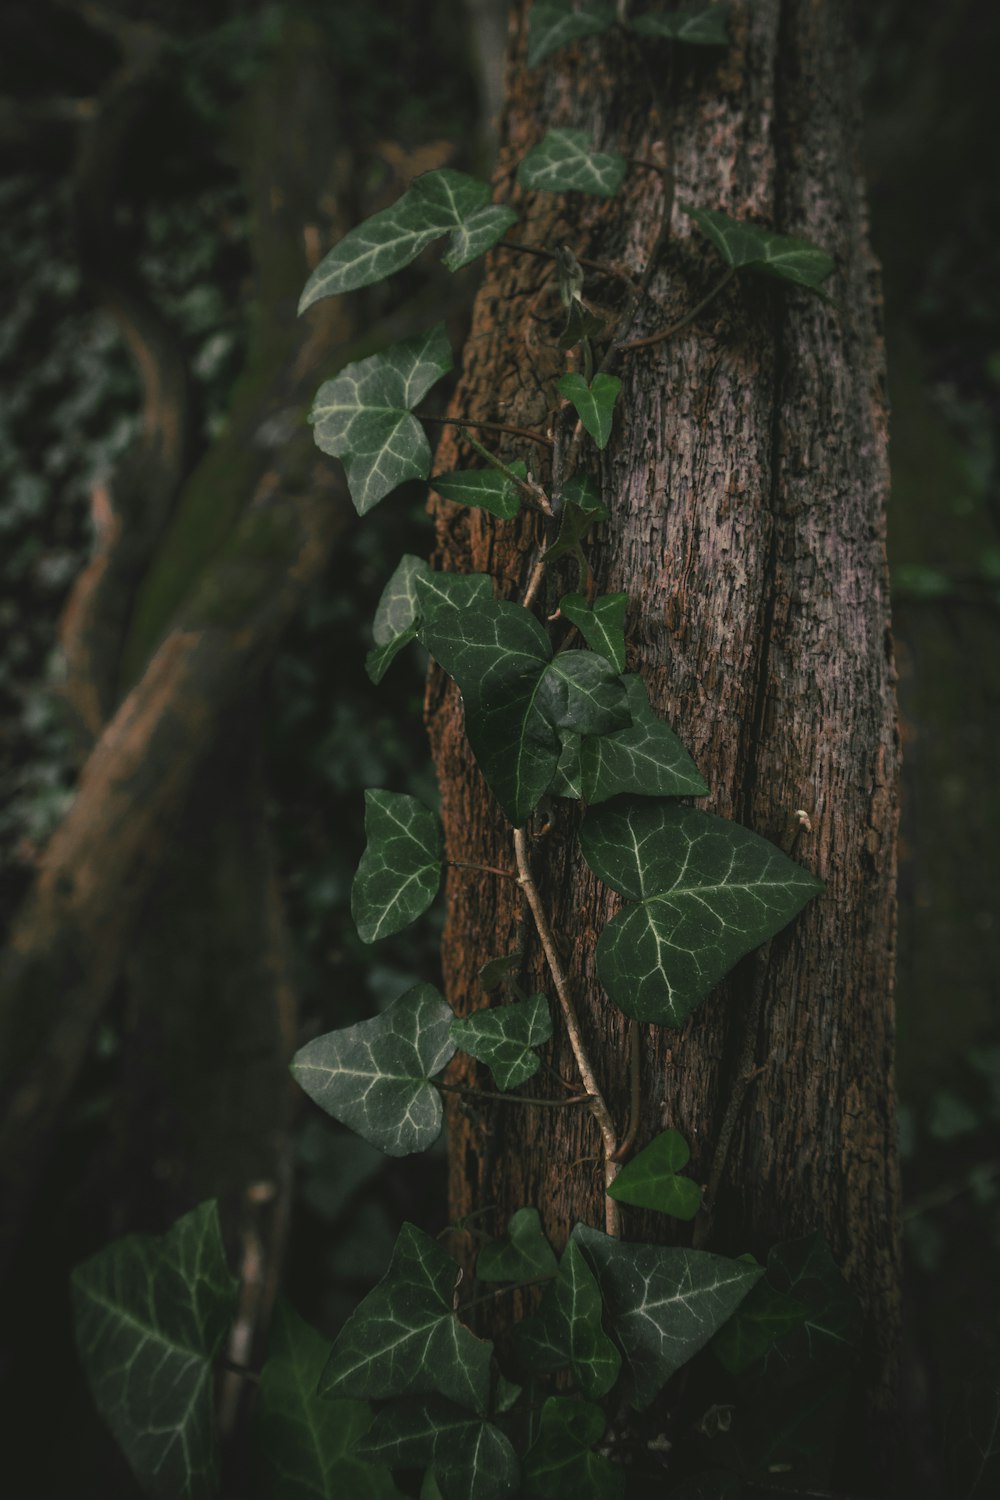 foglia verde su tronco d'albero marrone